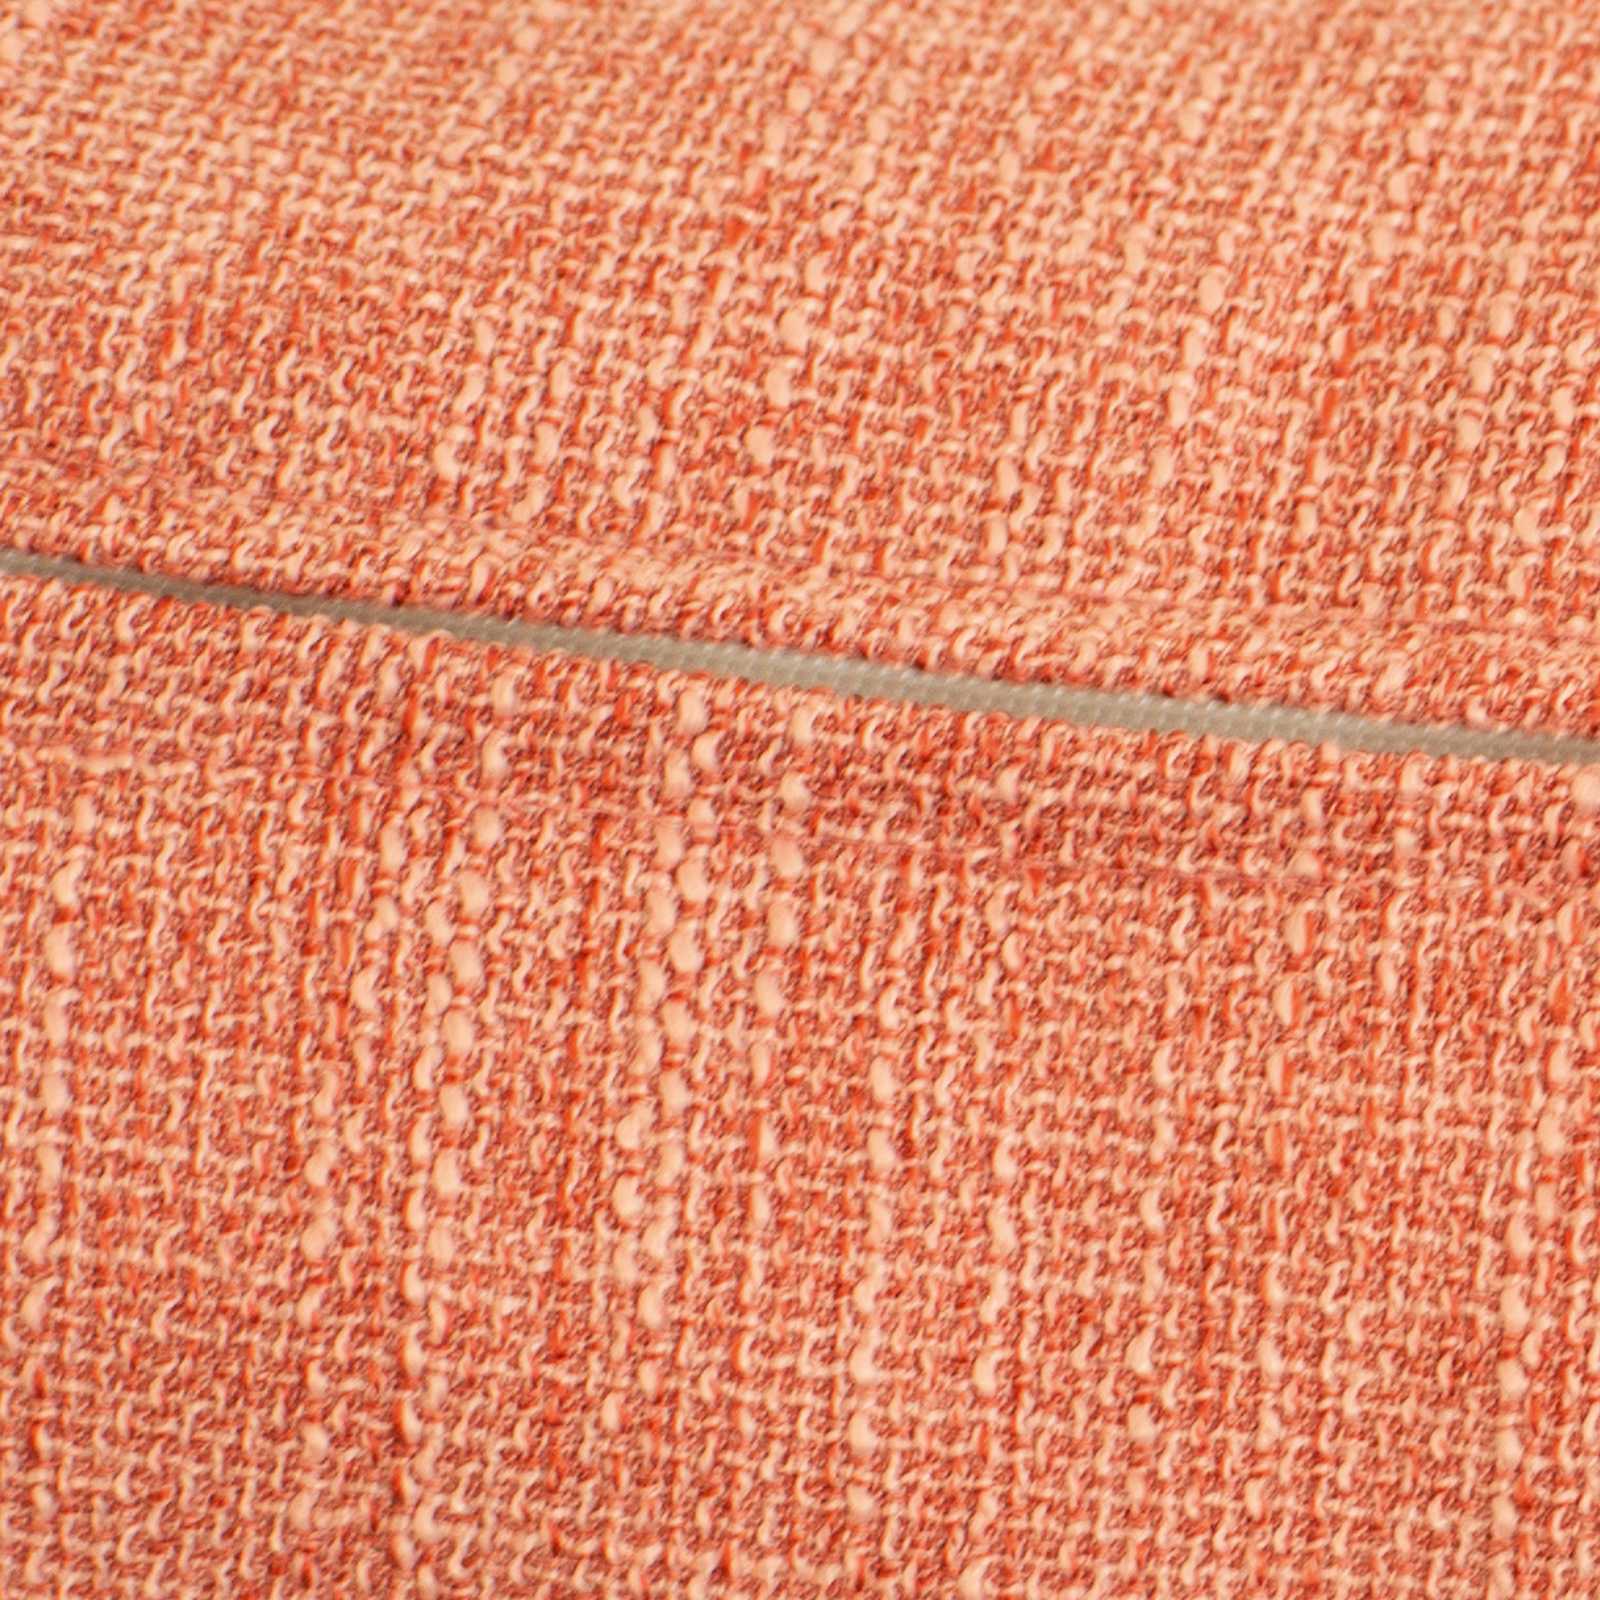             Housse de coussin orange "River», 45x45cm
        